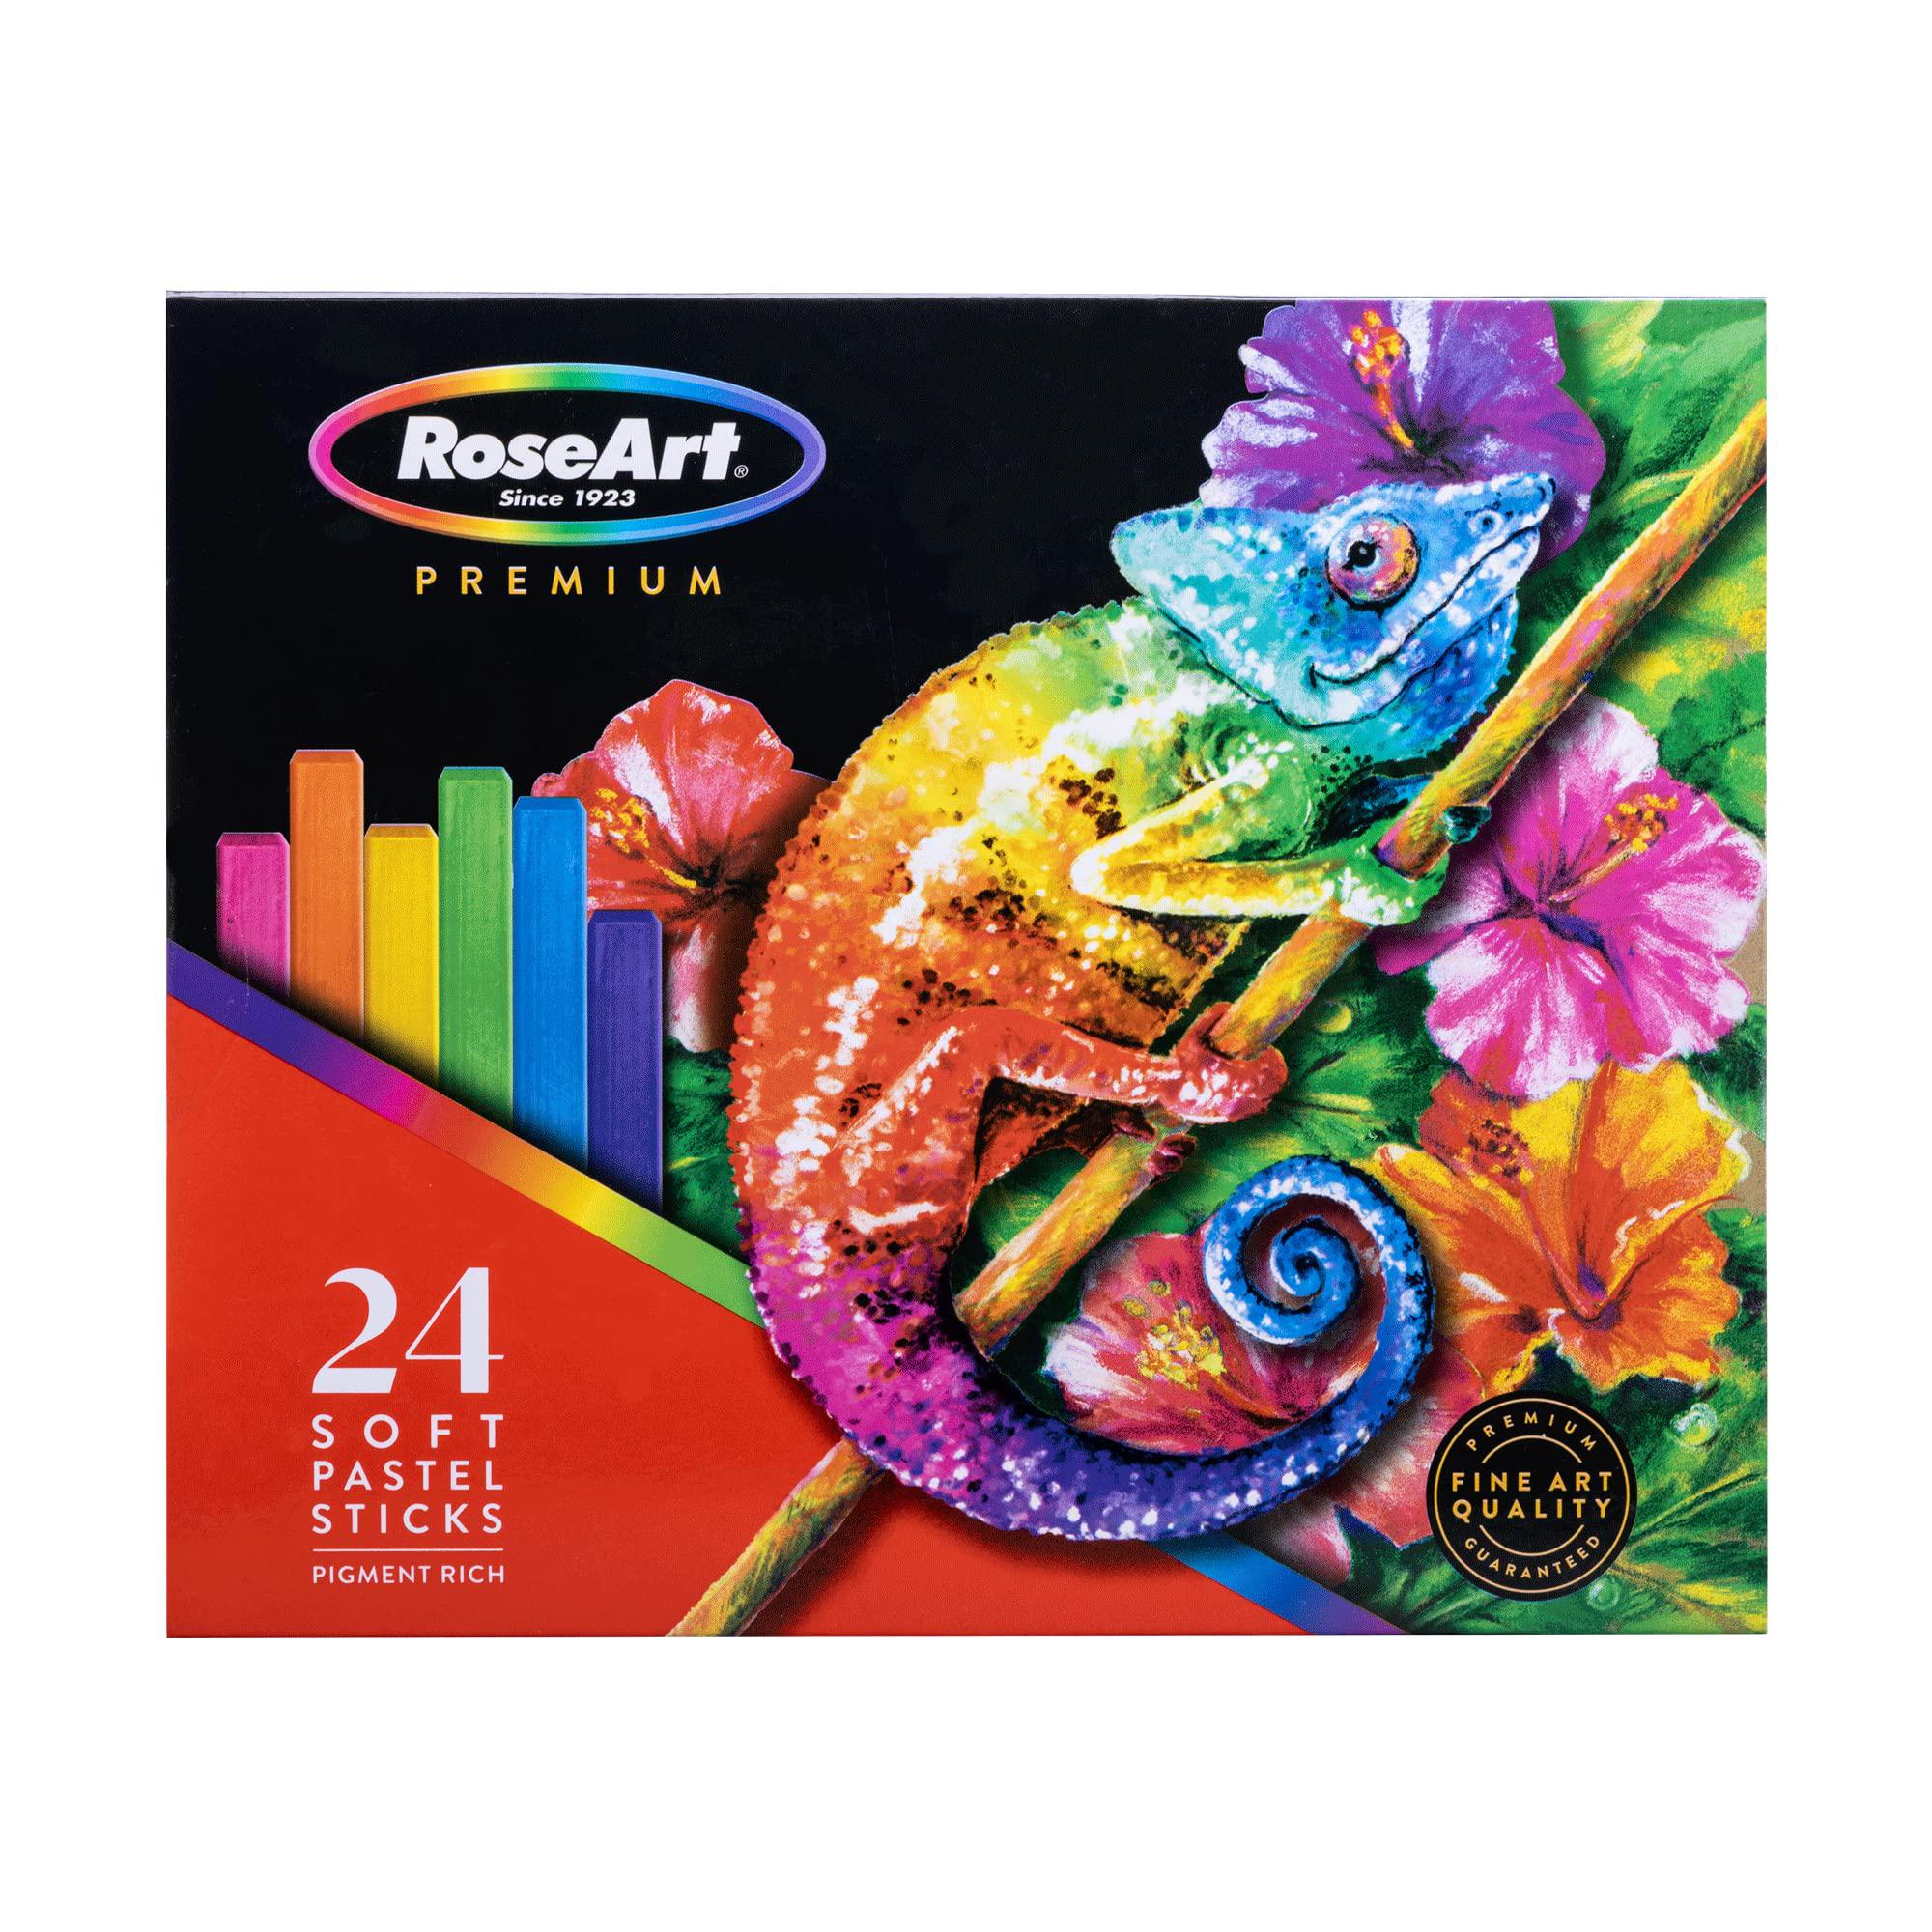 RoseArt rose art premium 24ct long soft pastel stick set for professionals - pigment rich, full size pastel sticks vivid colors